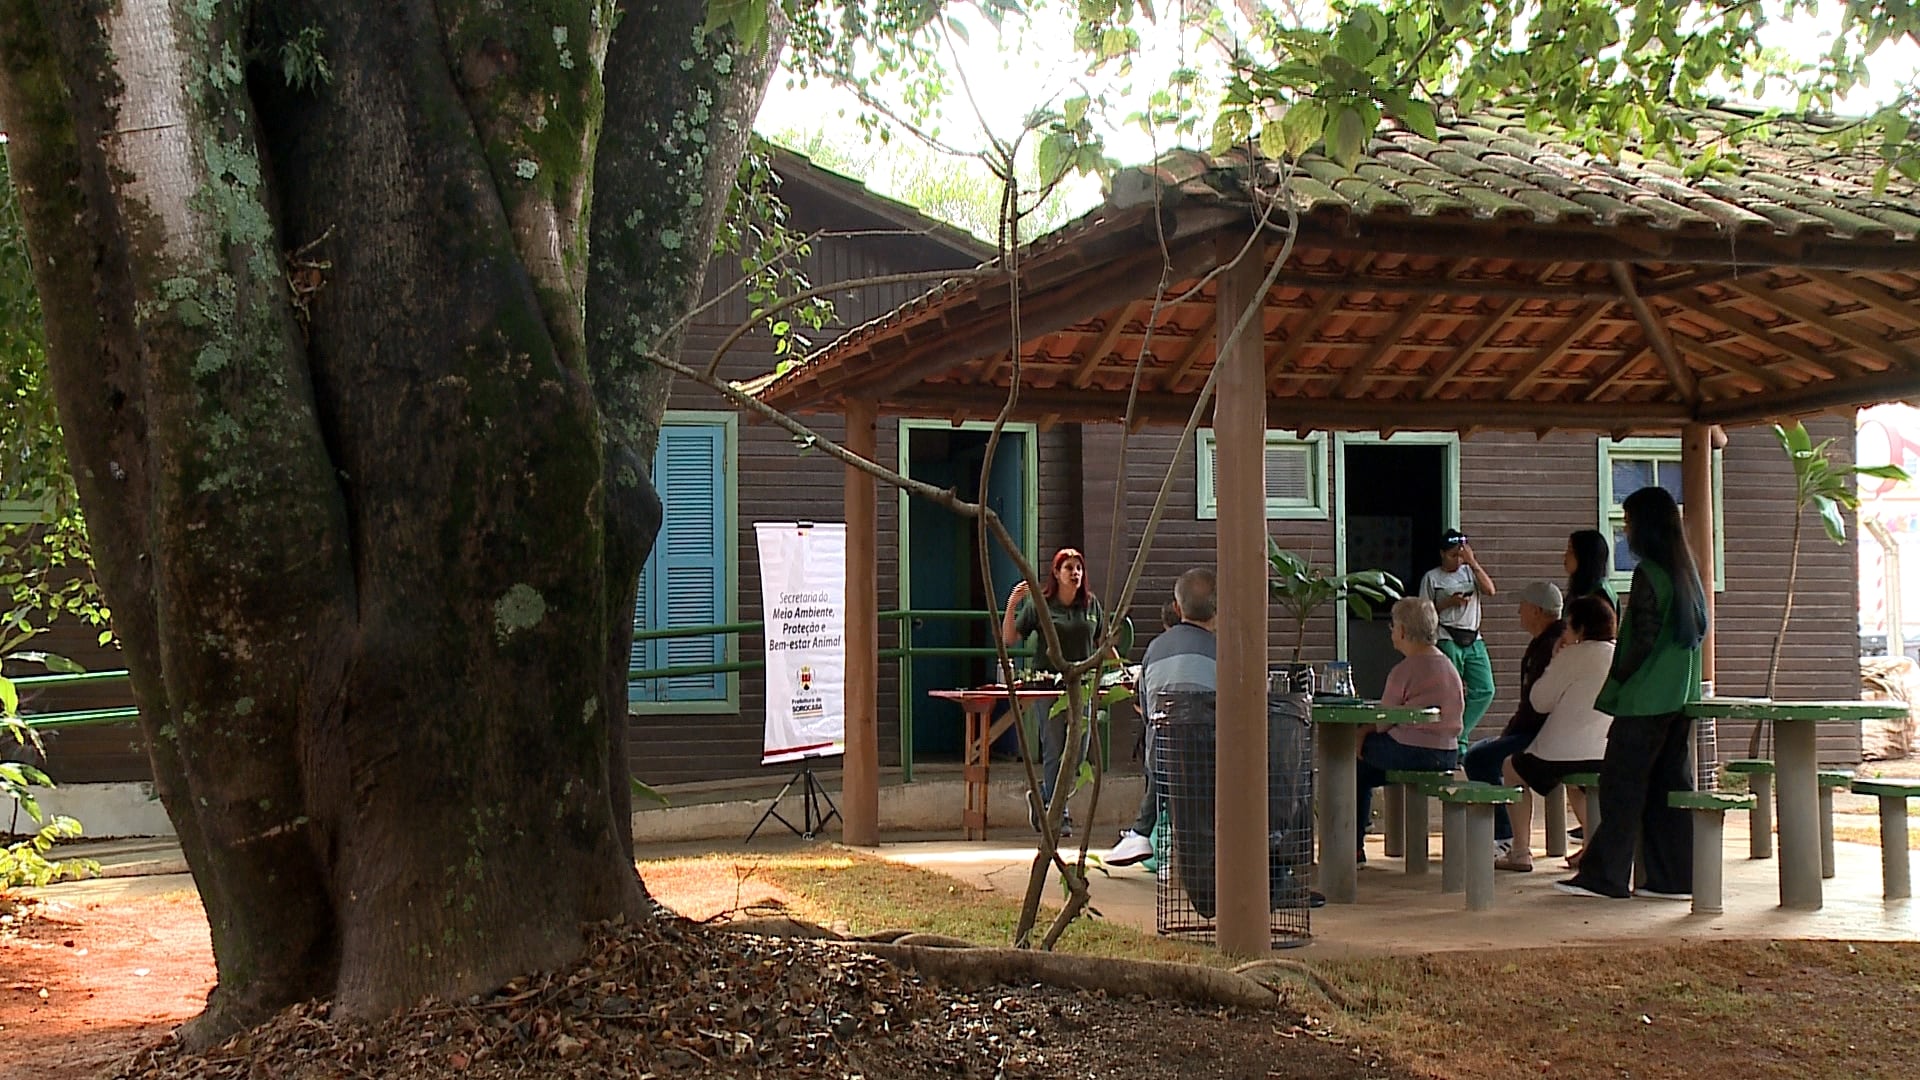 Oficina no Parque da Biquinha ensina a fazer miniterrário